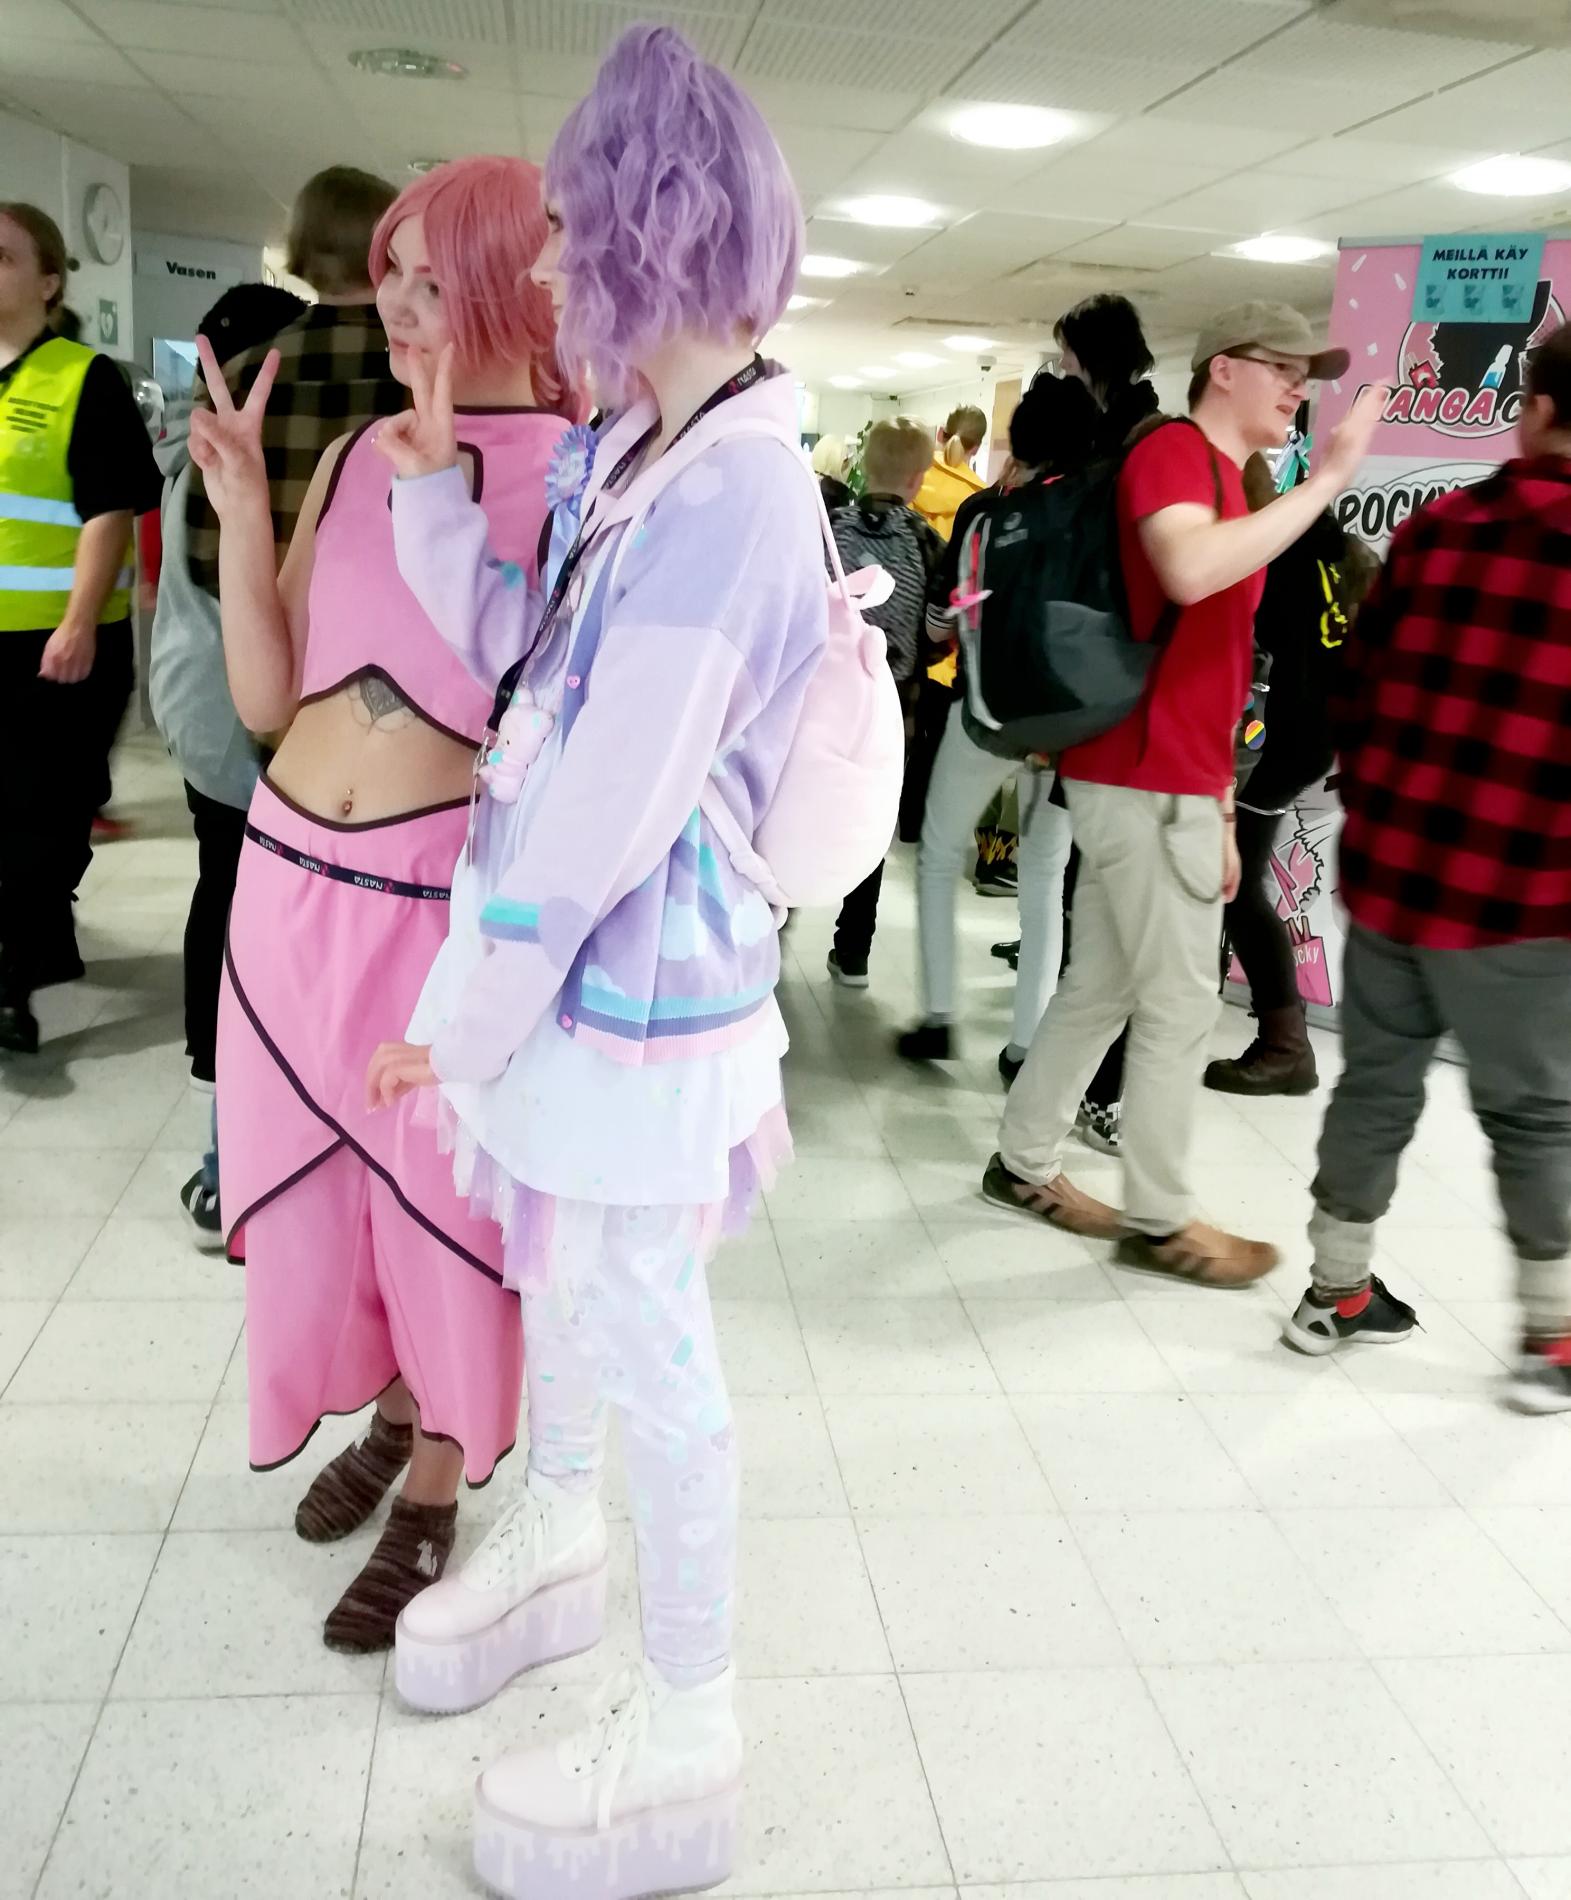 Kaksi nuorta poseeraamassa cosplay-asuissa toiselle kameralle tapahtumassa. Ihmisiä käytävällä.  